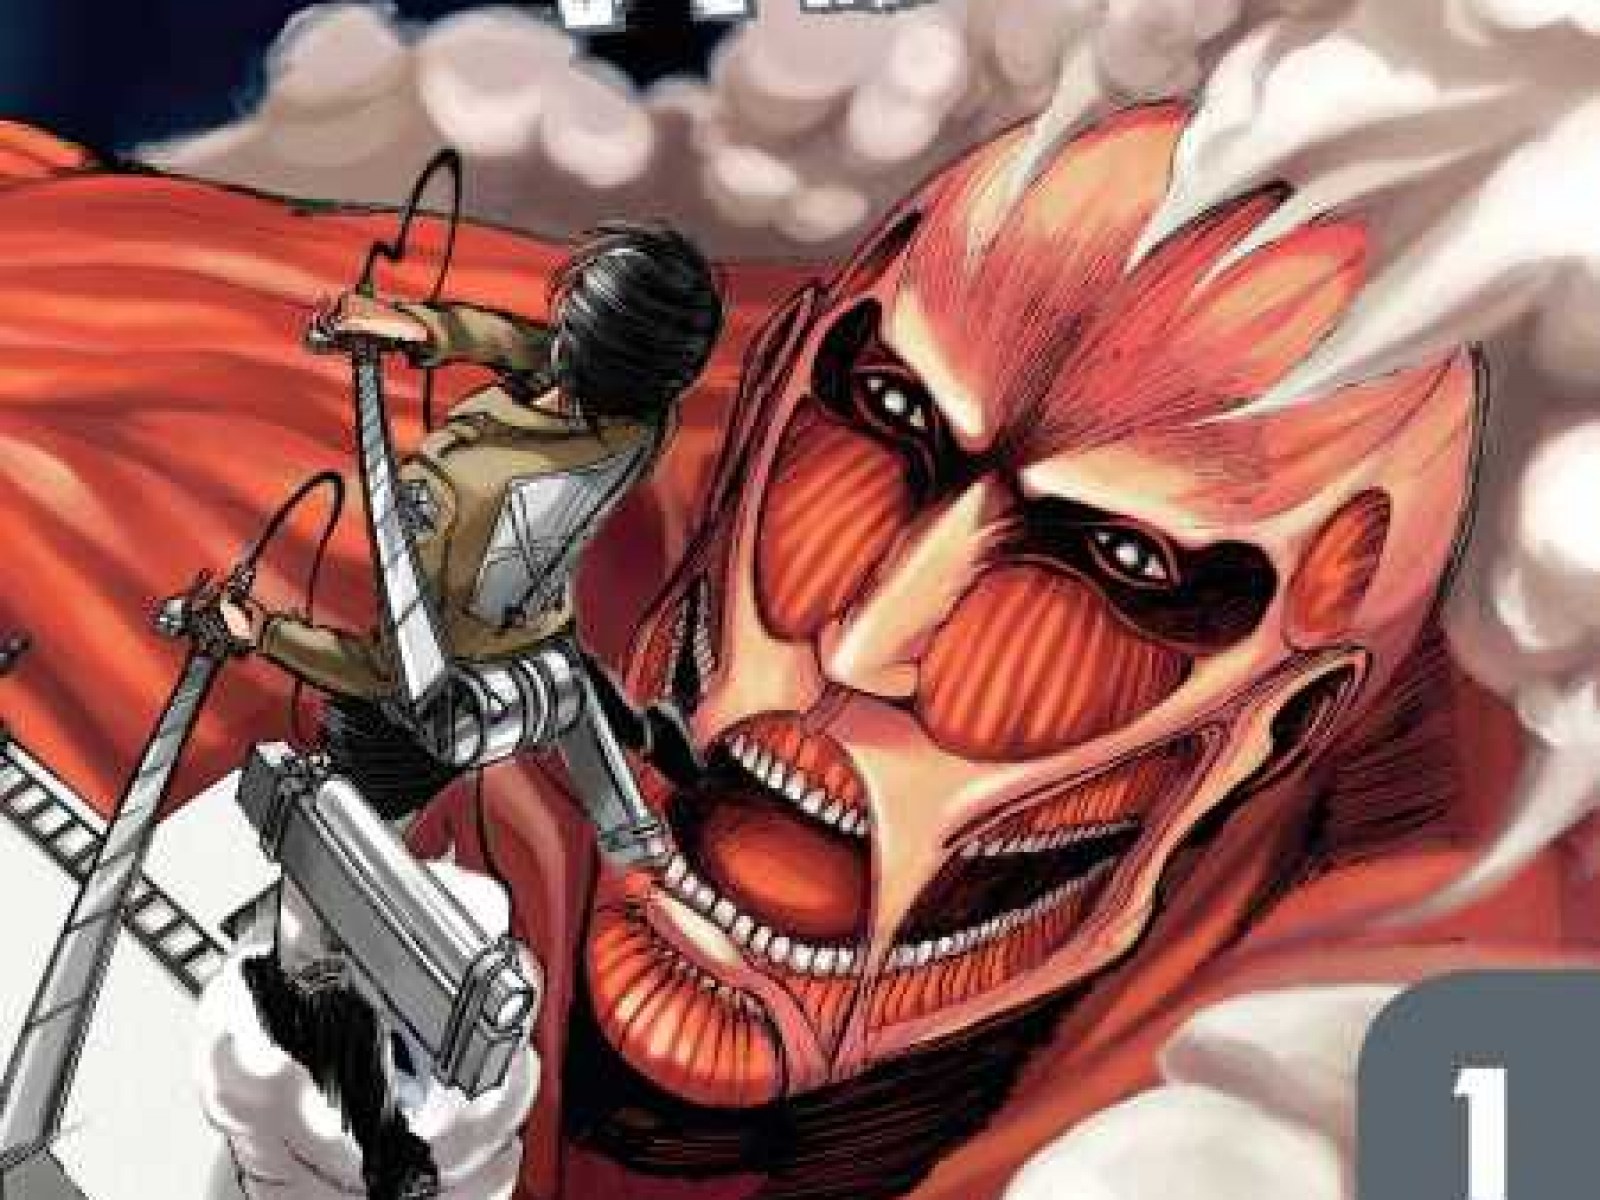 Shingeki no Kyojin Chapter 1, Read Shingeki no kyojin Manga Online